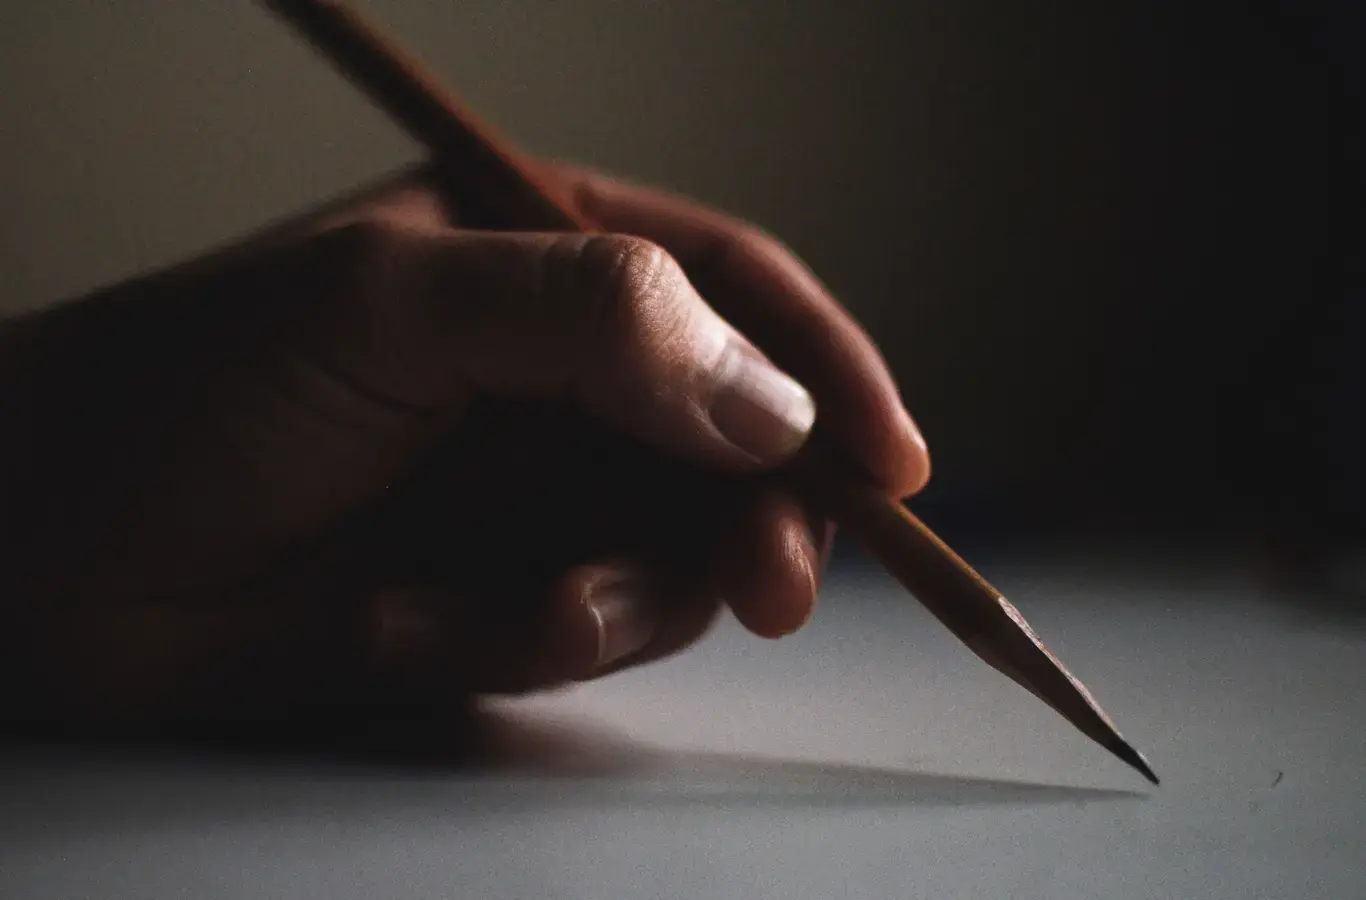 pessoa segurando um lápis para ilustrar o conteúdo sobre competências da redação do Enem